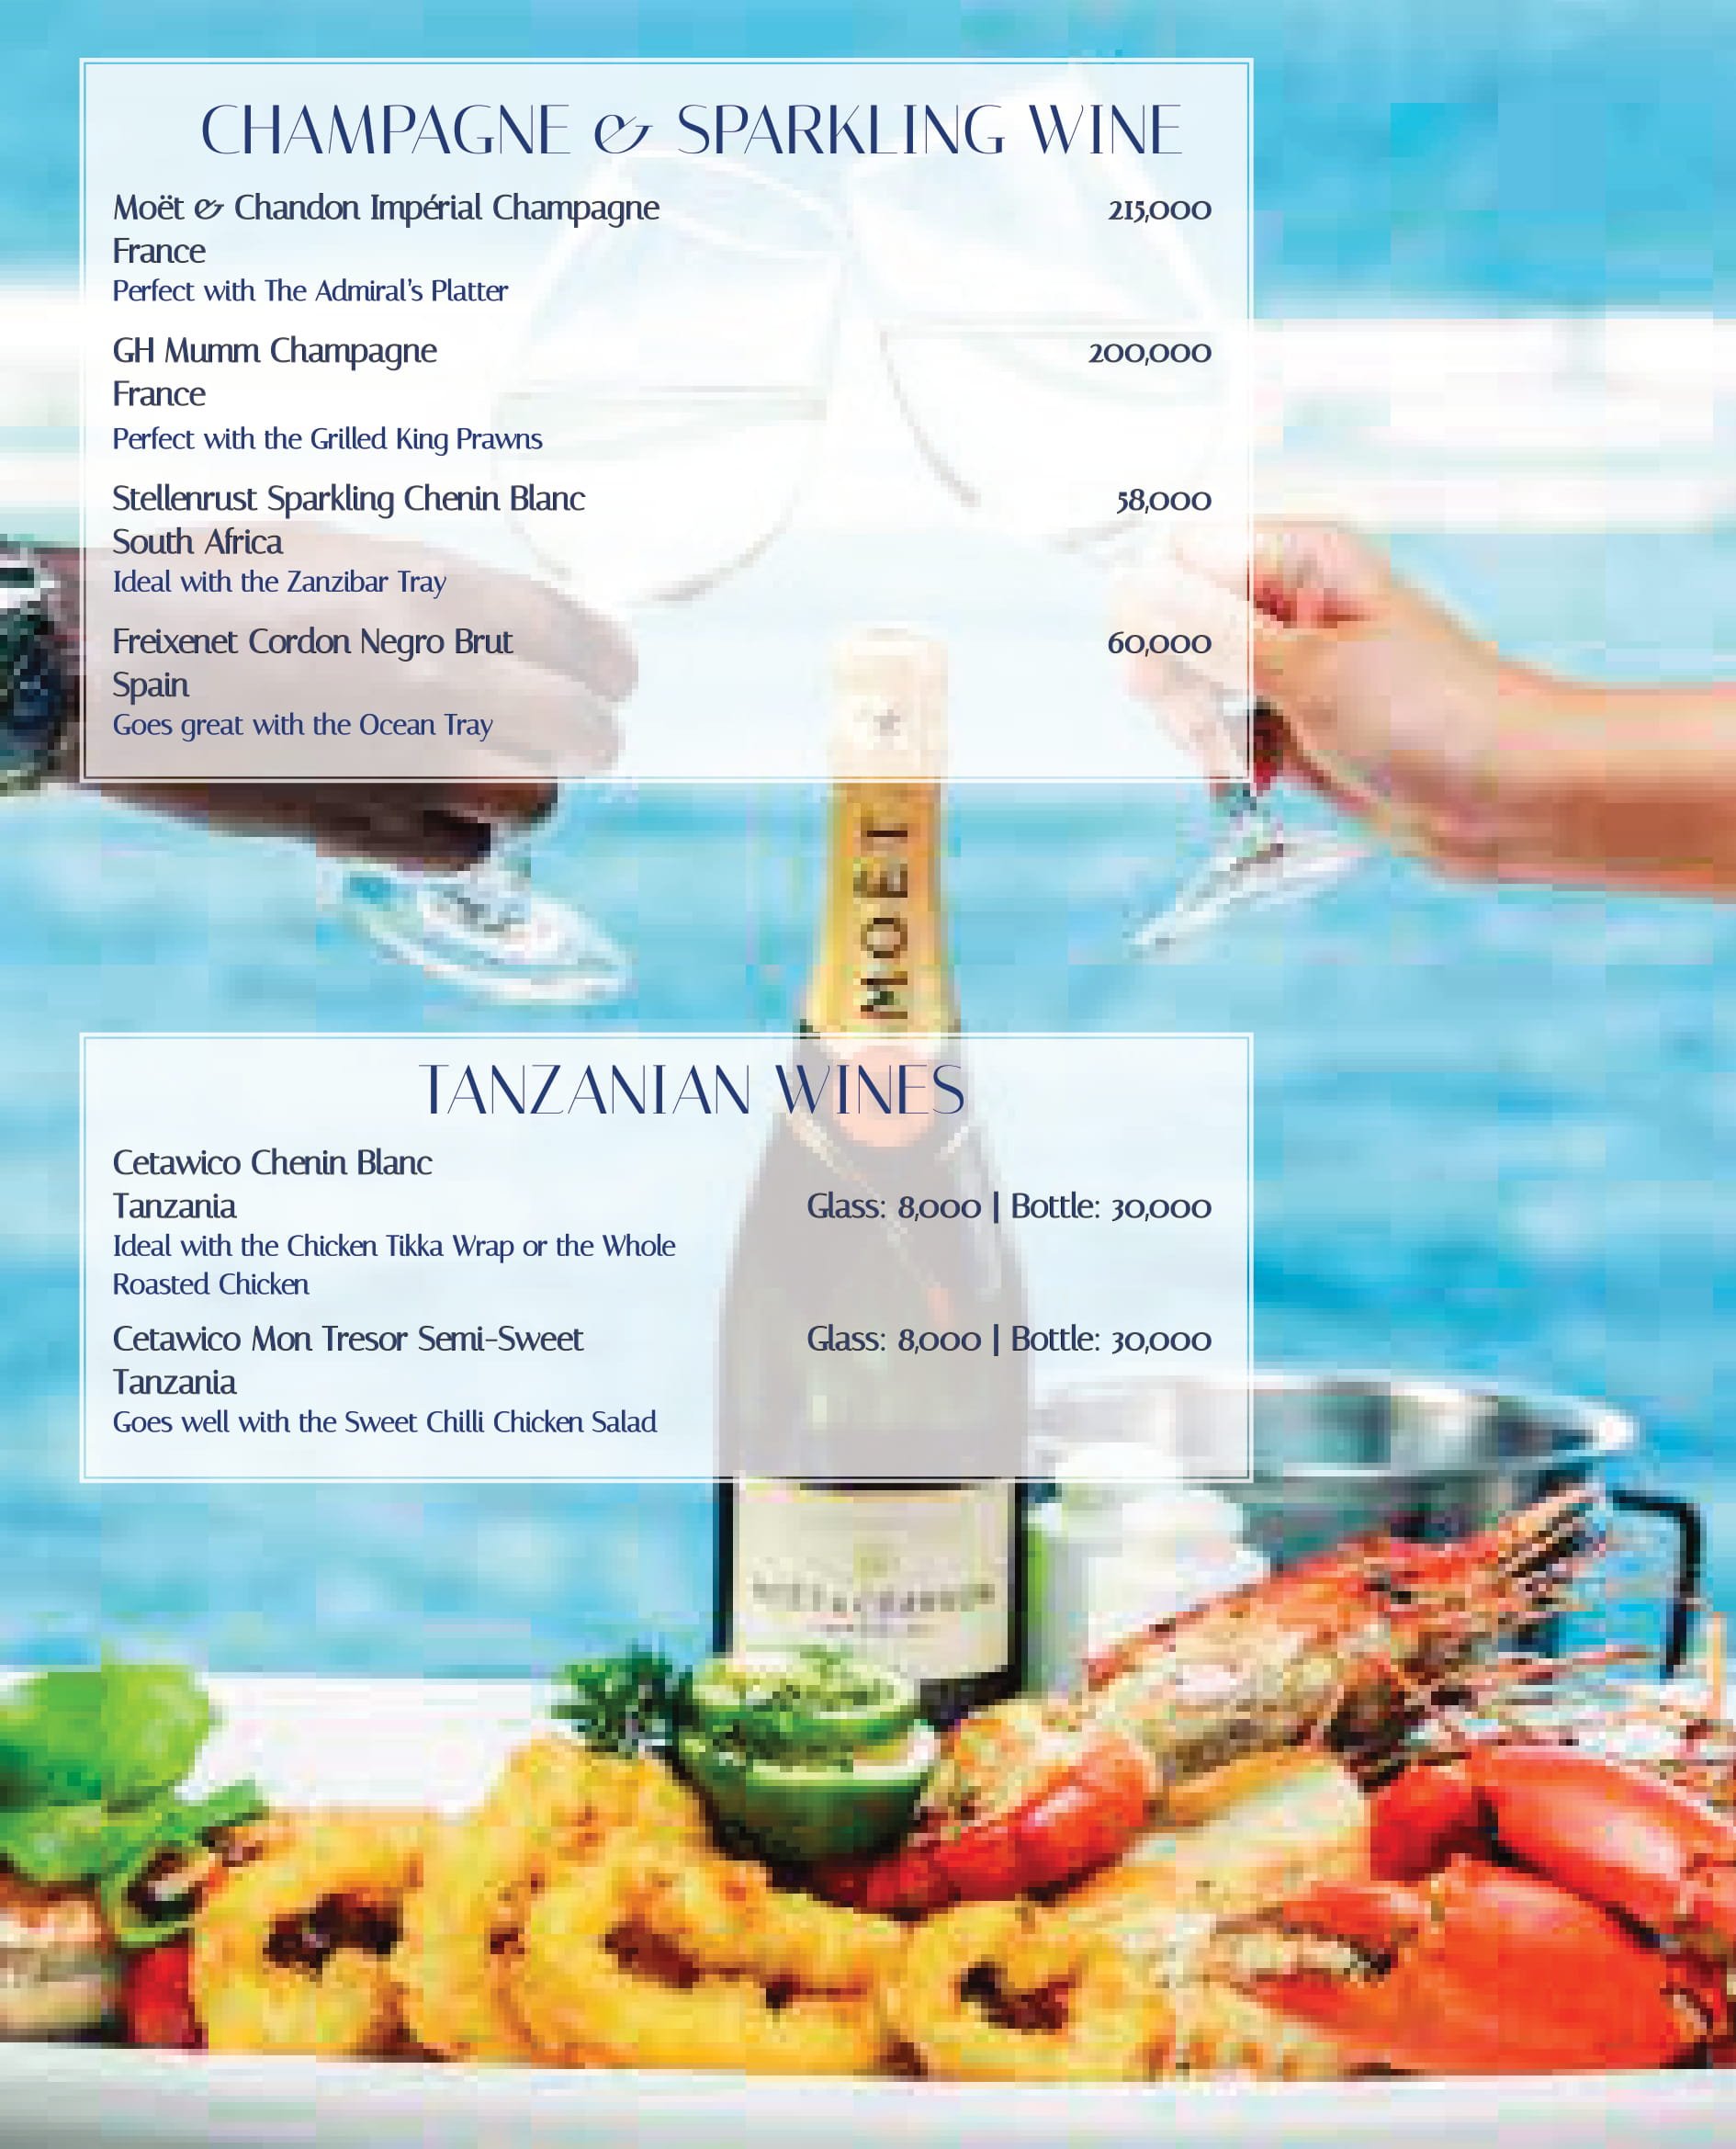 Karambezi drinks menu: Champagne, Sparkling wines, and Tanzanian wines